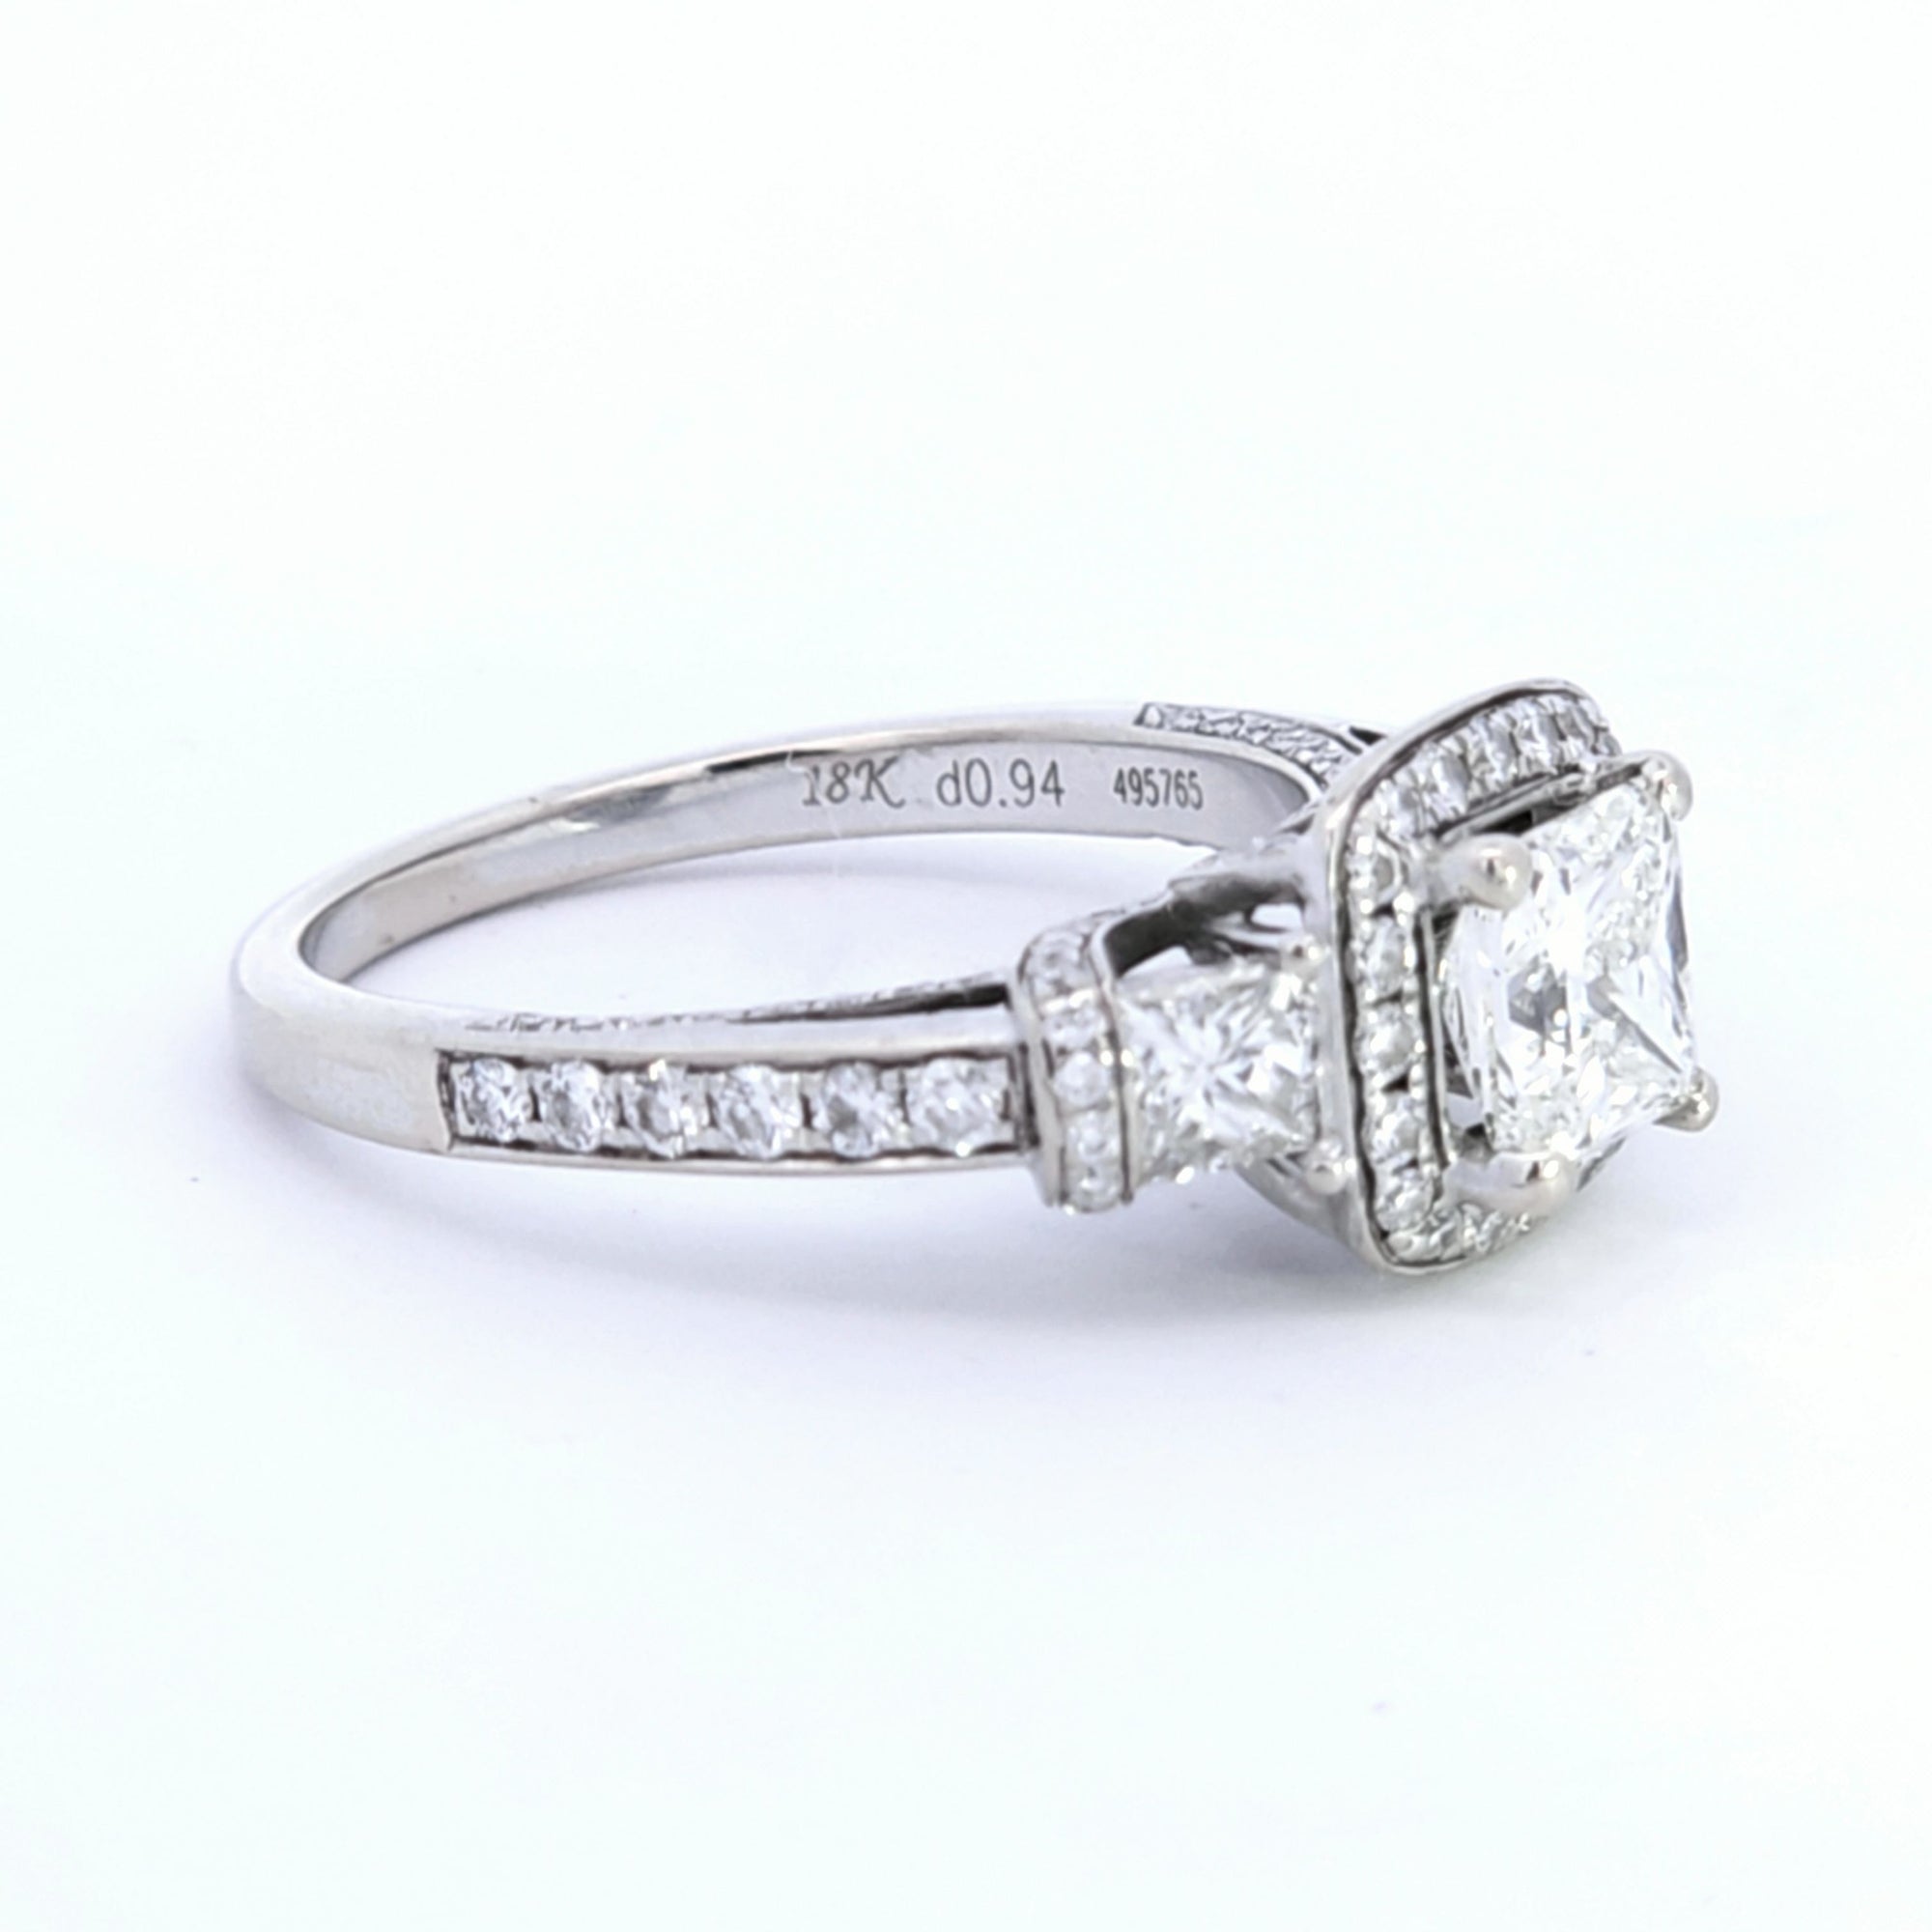 Simon G' Three Stone Princess Diamond Gallery Ring | 1.84ctw | SZ 6.25 |